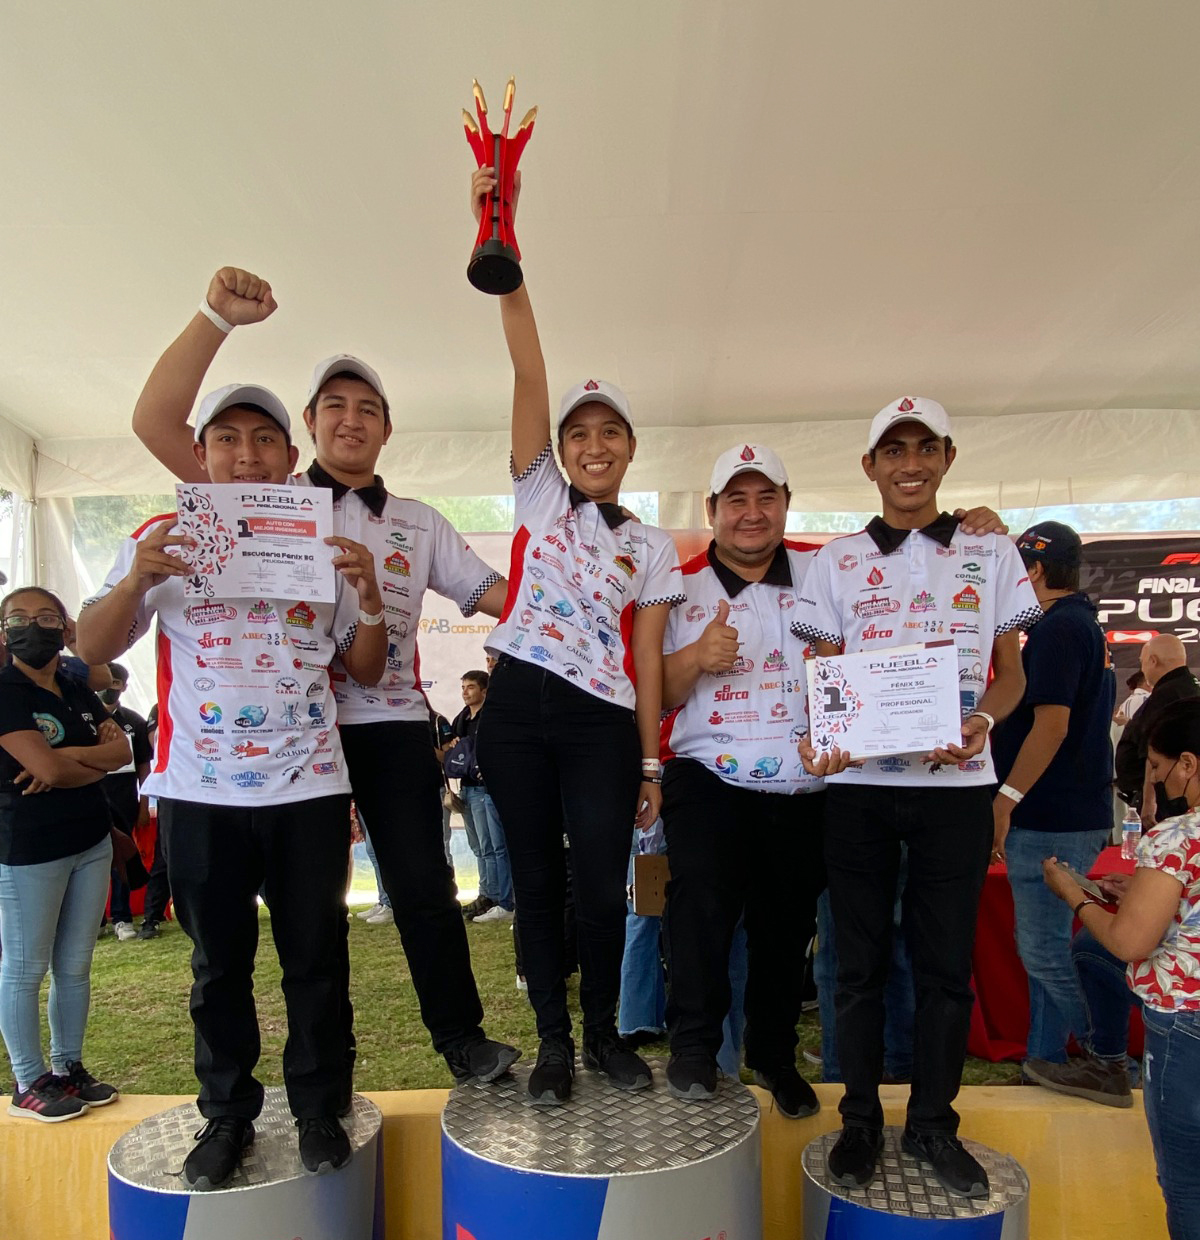 Estudiantes del Conalep representarán a México en Mundial Singapur 2023 con prototipo de Fórmula 1